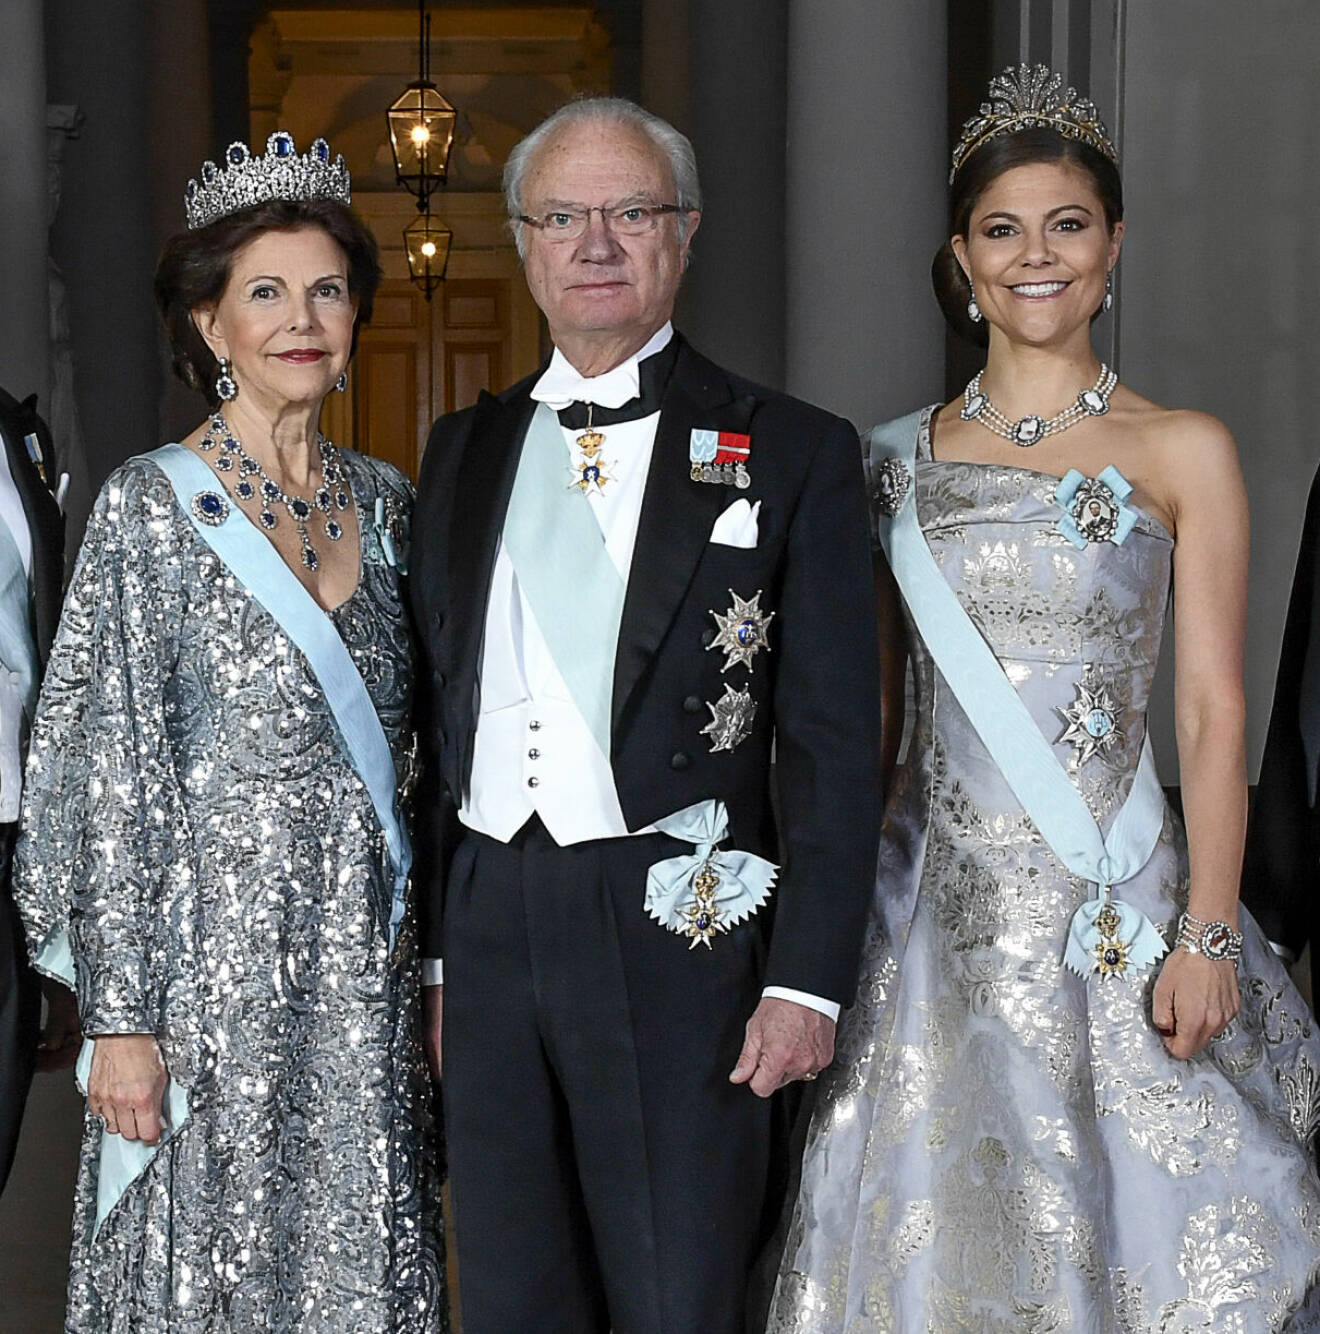 Kungen, drottning Silvia och kronprinsessan Victoria klädda till fest